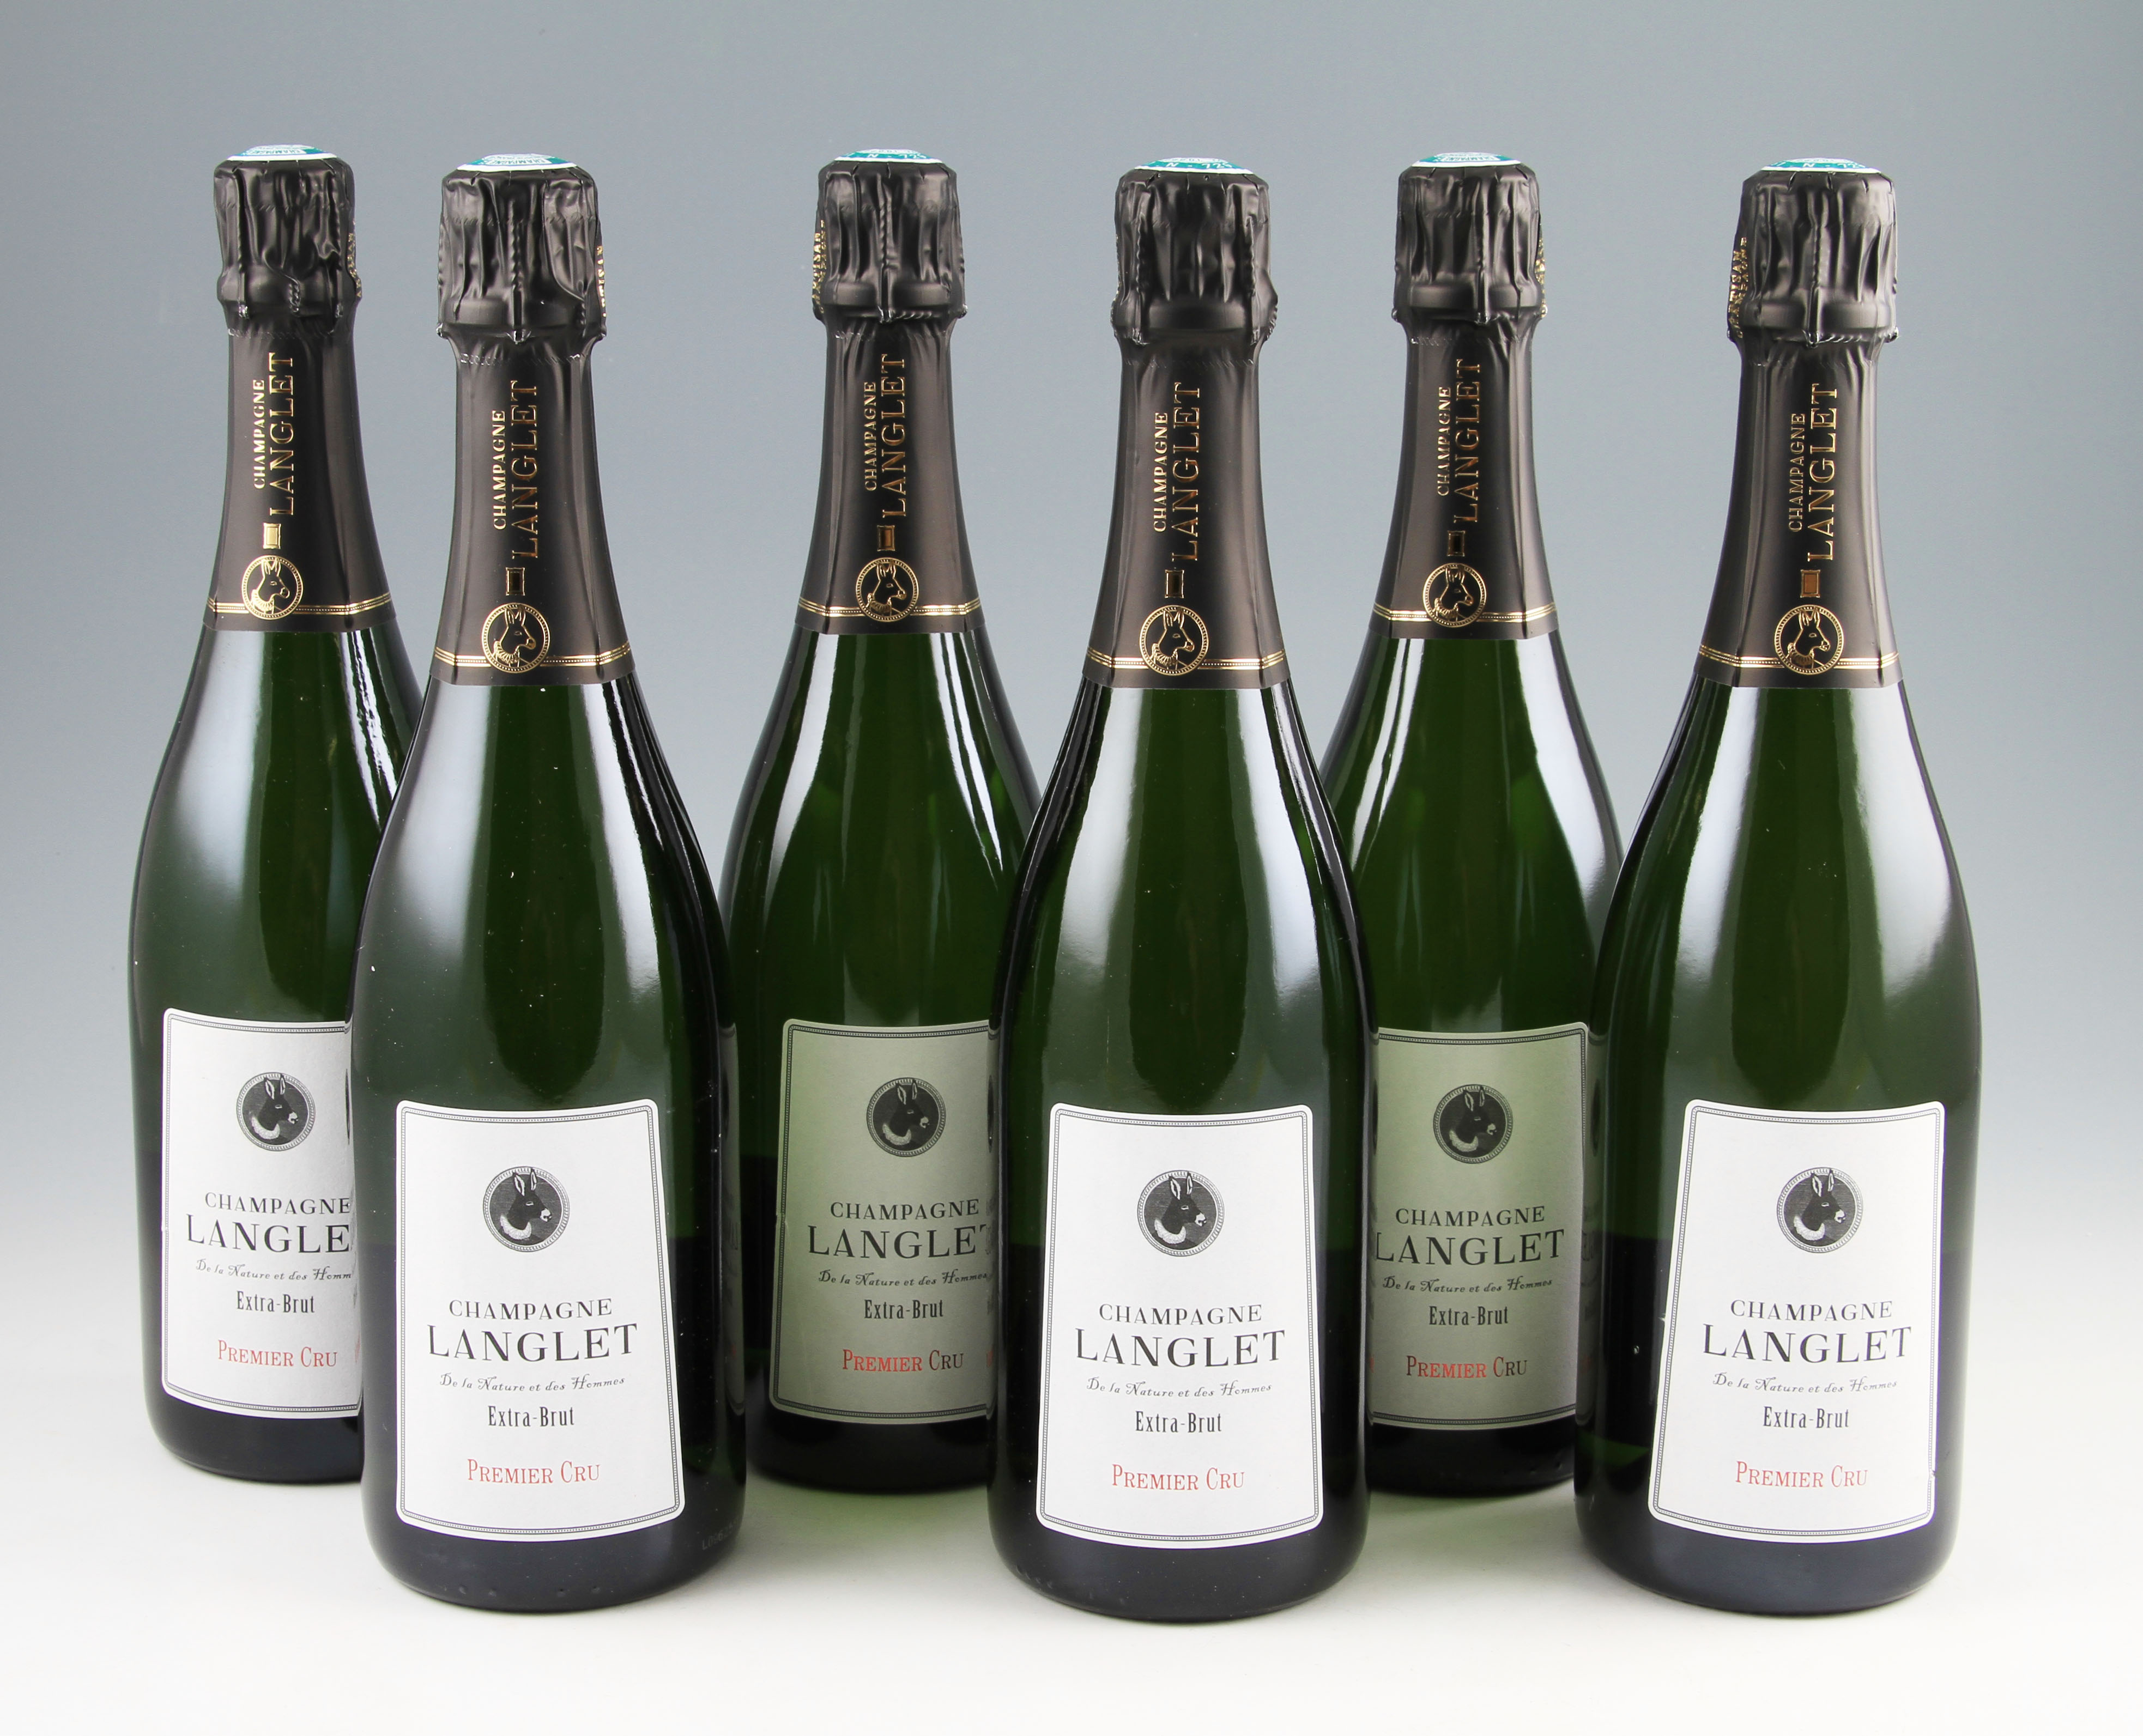 *Champagne Langlet Premier Cru Extra Brut. 6 bottles. France